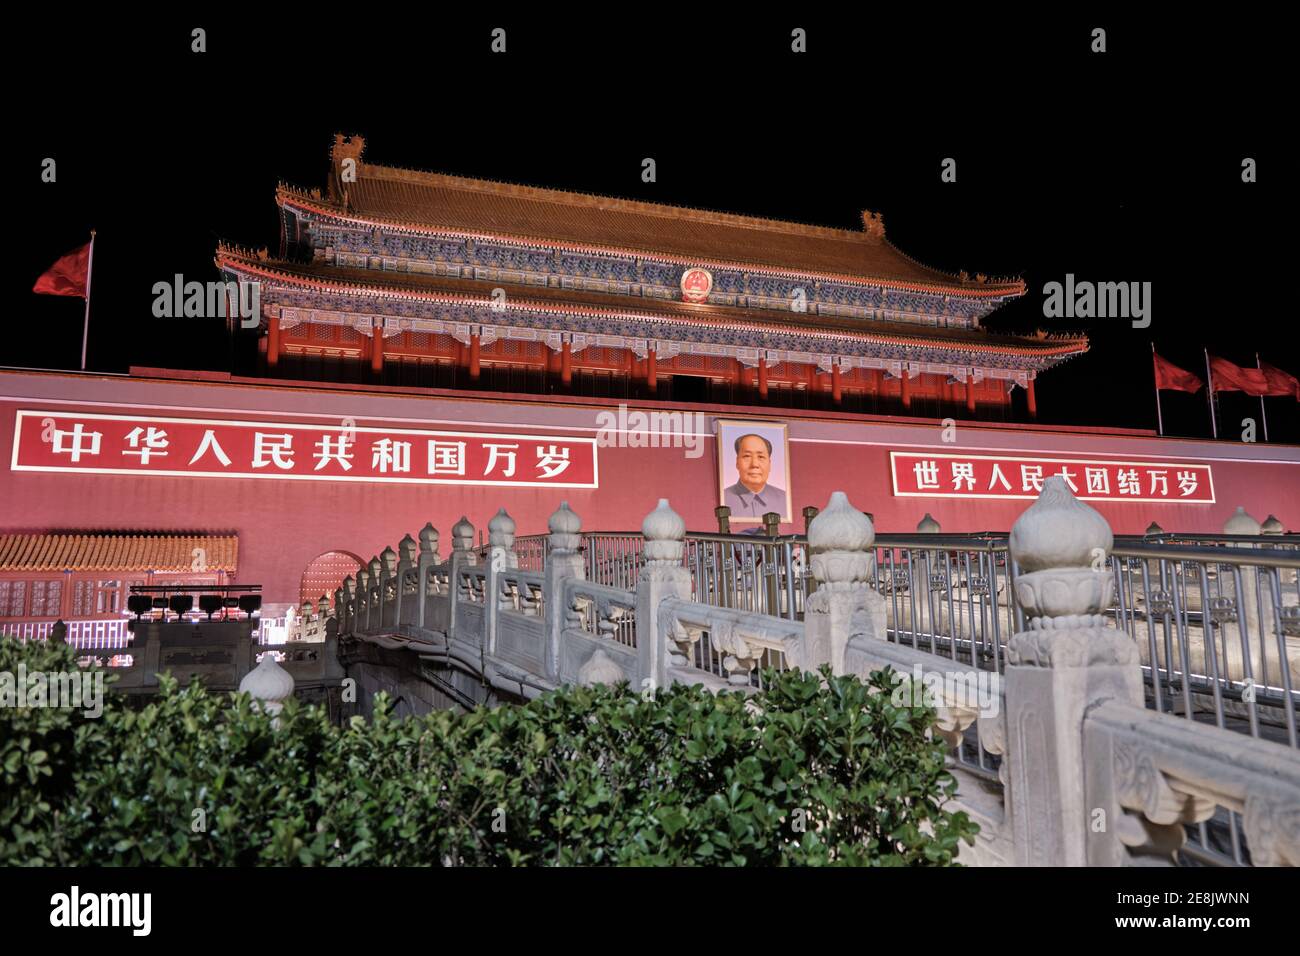 Beijing, Chine - 10 octobre 2018 : vue de nuit de la porte de la paix céleste (Tiananmen), entrée au Musée du Palais (Cité interdite) à Beijing, CH Banque D'Images